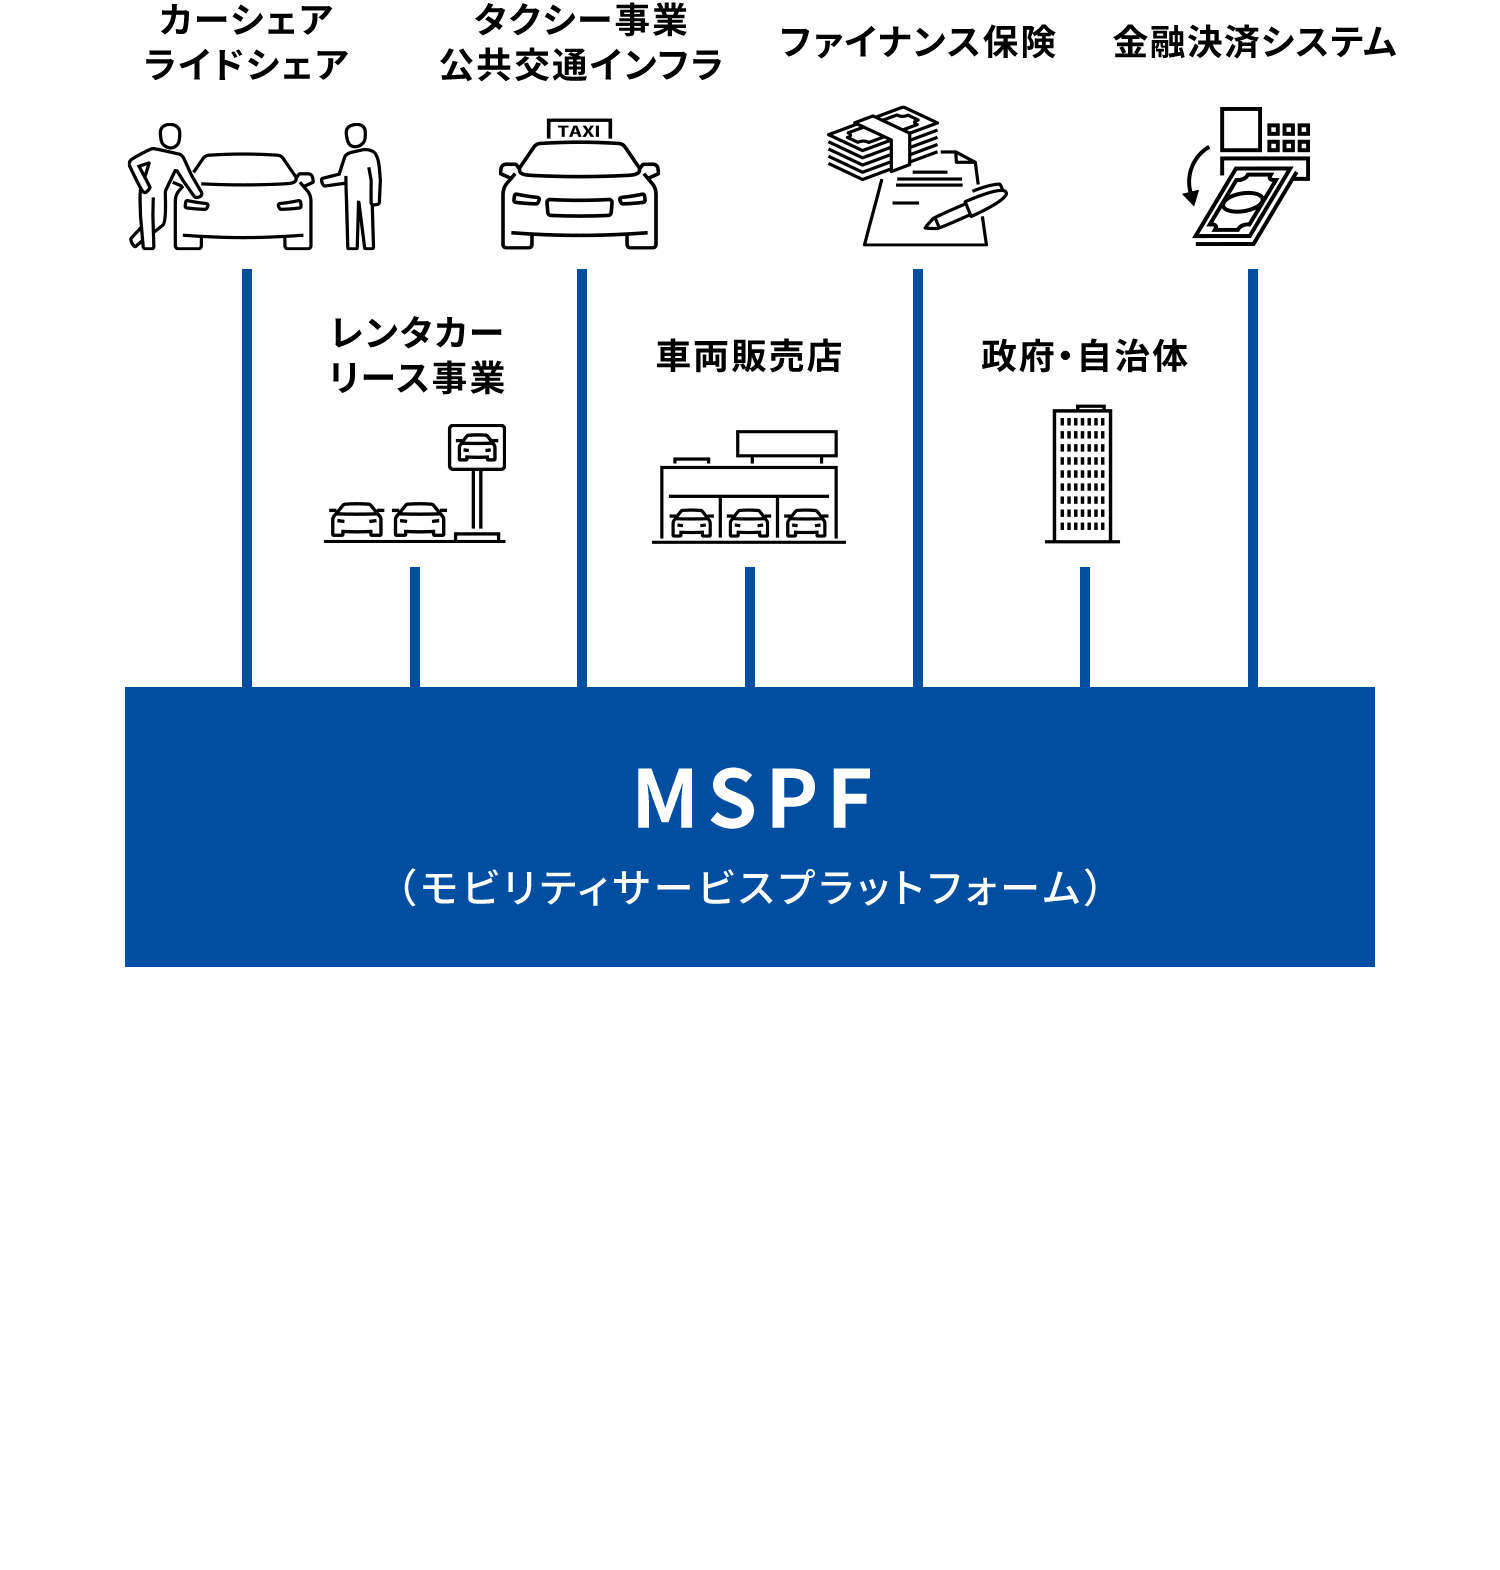 MSPF（モビリティサービスプラットフォーム）